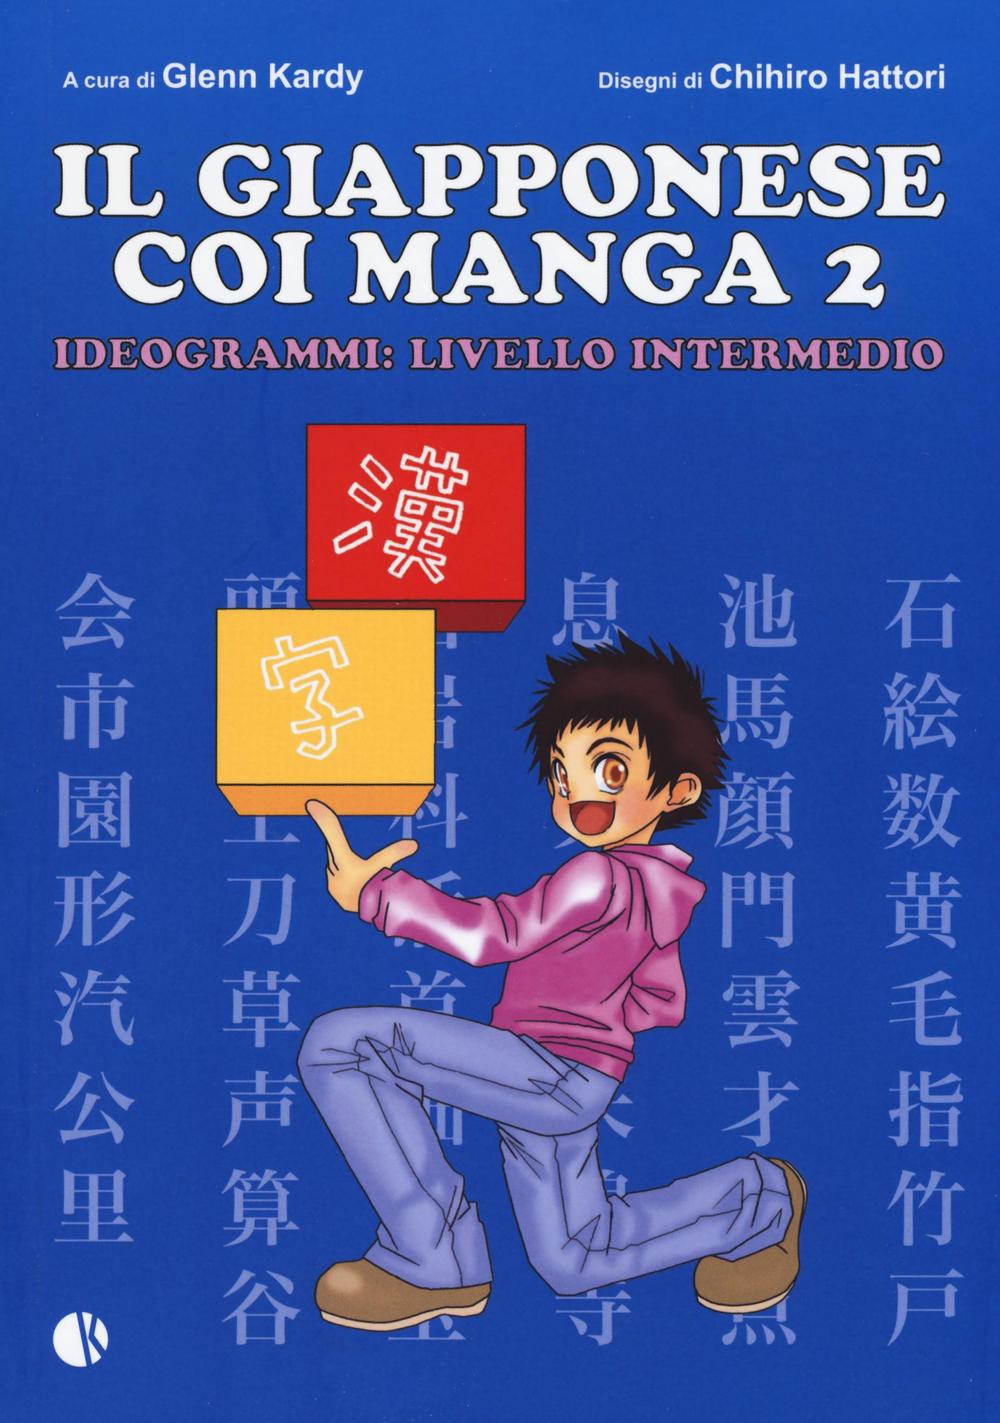 Il giapponese coi manga. Ideogrammi: livello intermedio. Ediz. illustrata. Vol. 2.